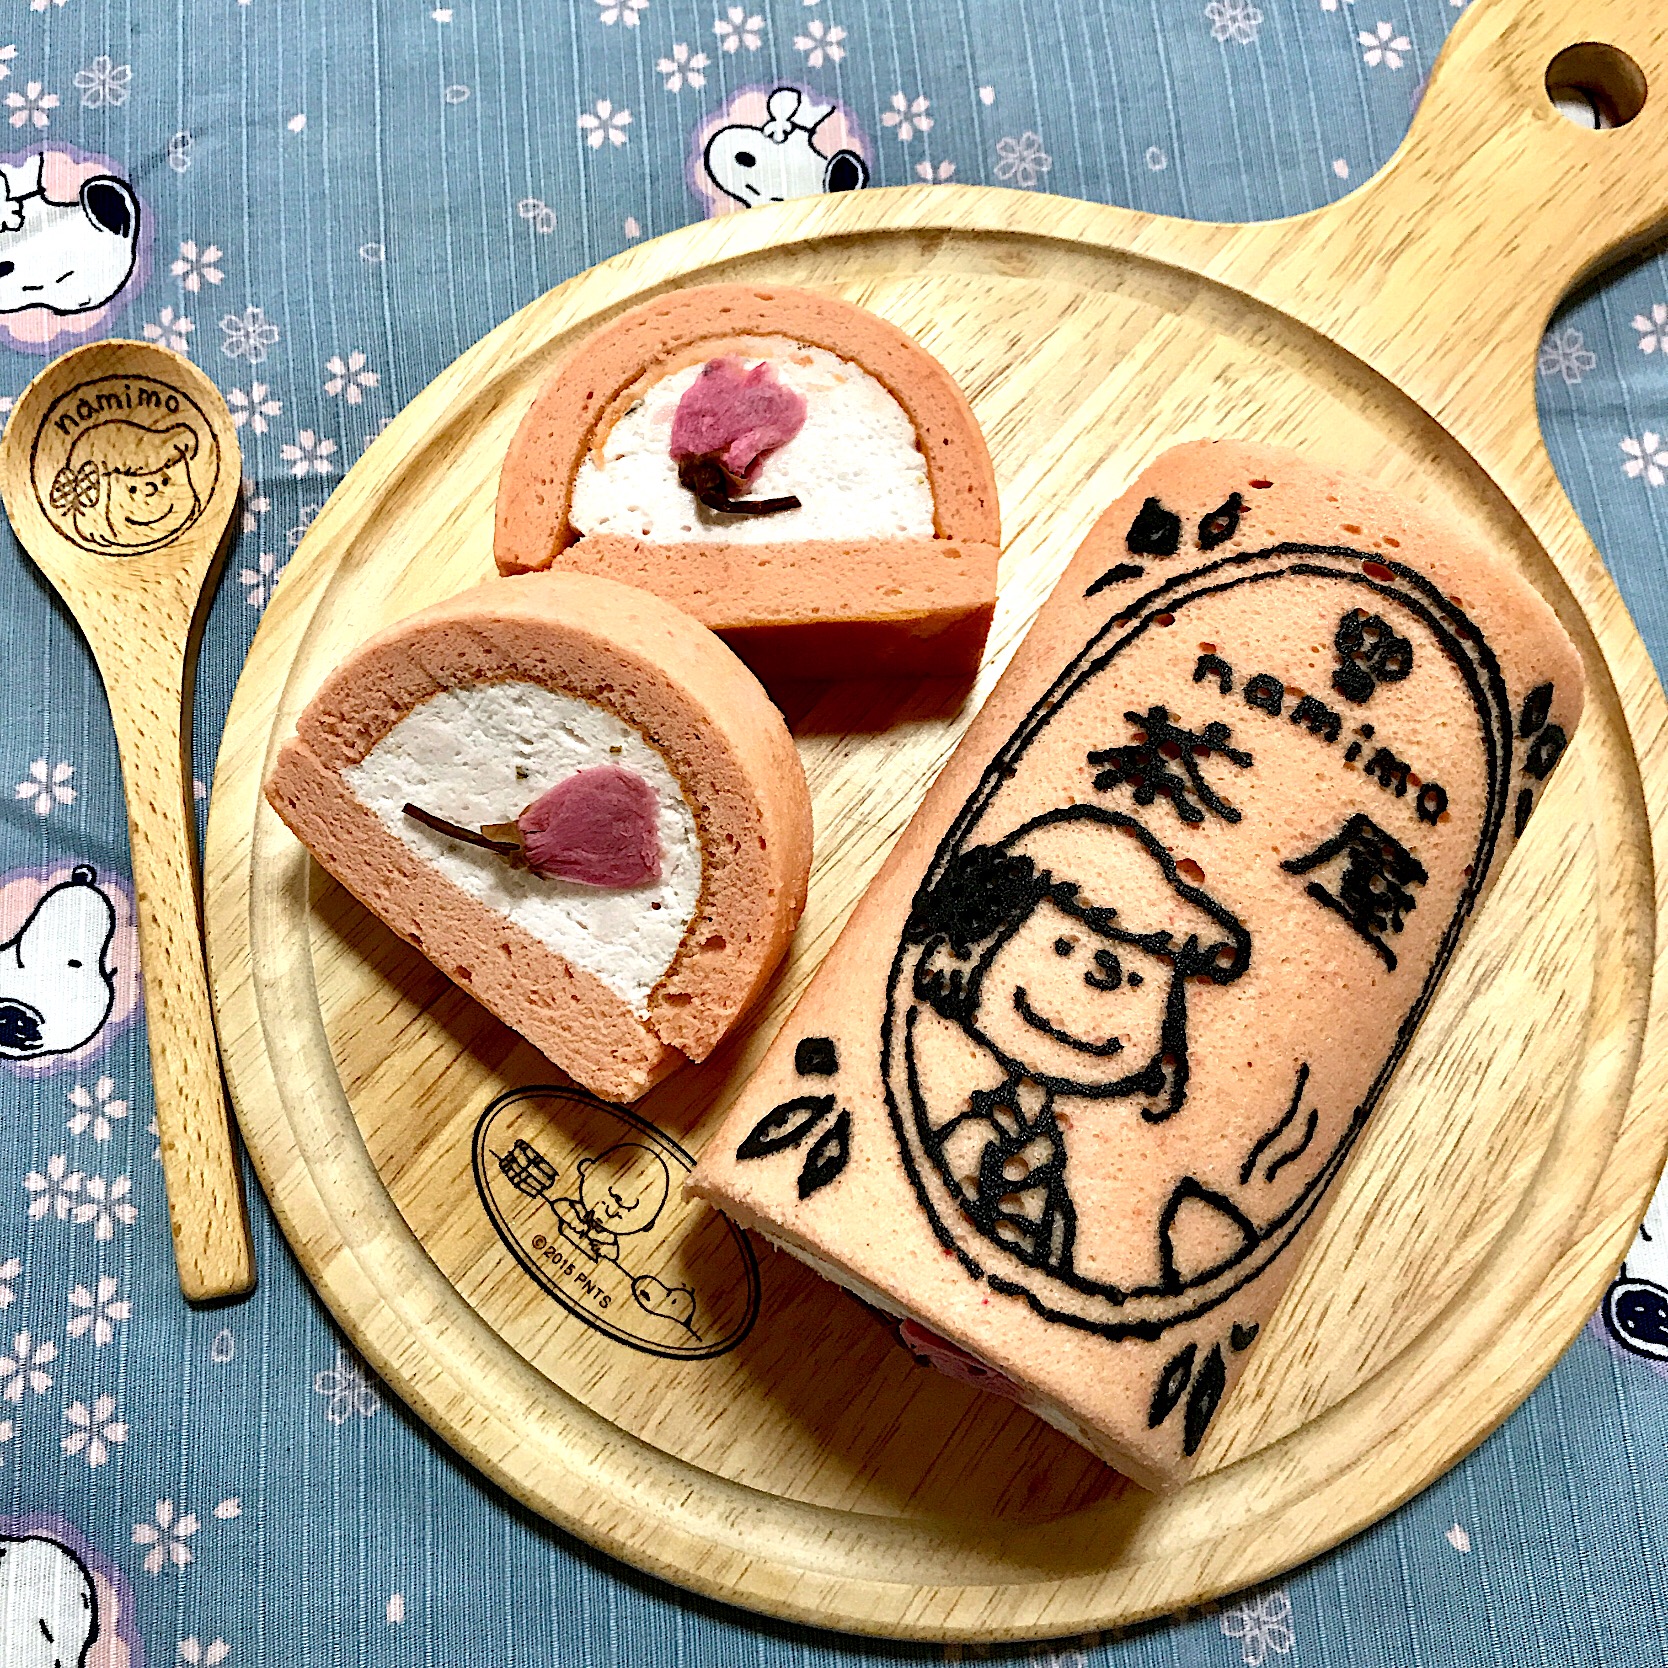 桜ロールケーキ